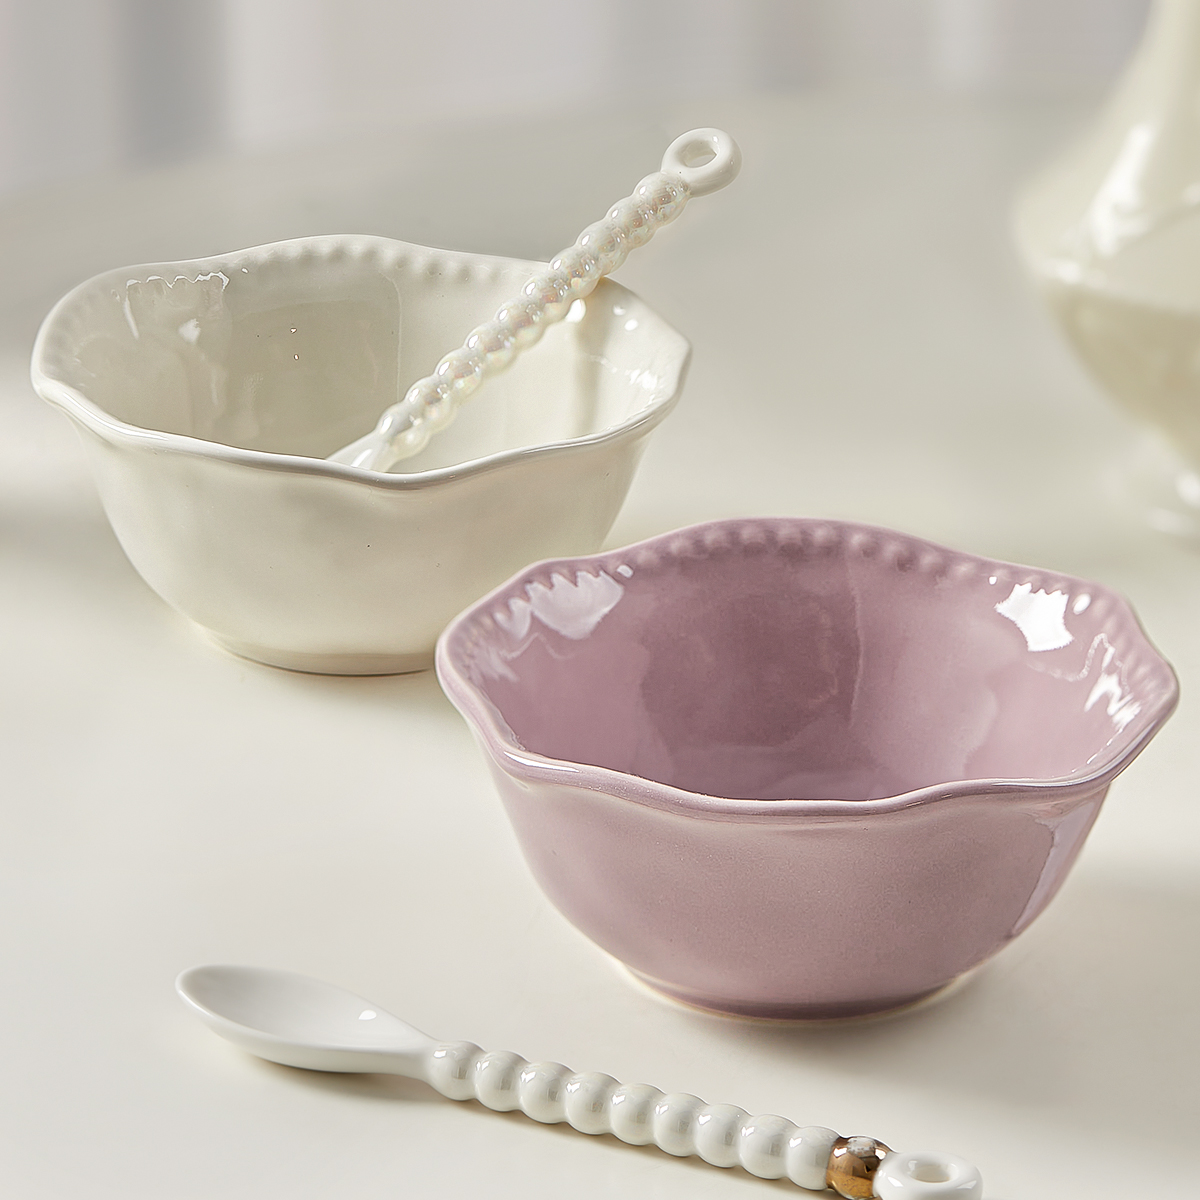 高颜值酸奶碗带勺燕麦碗家用陶瓷麦片早餐小碗个人专用甜品碗餐具